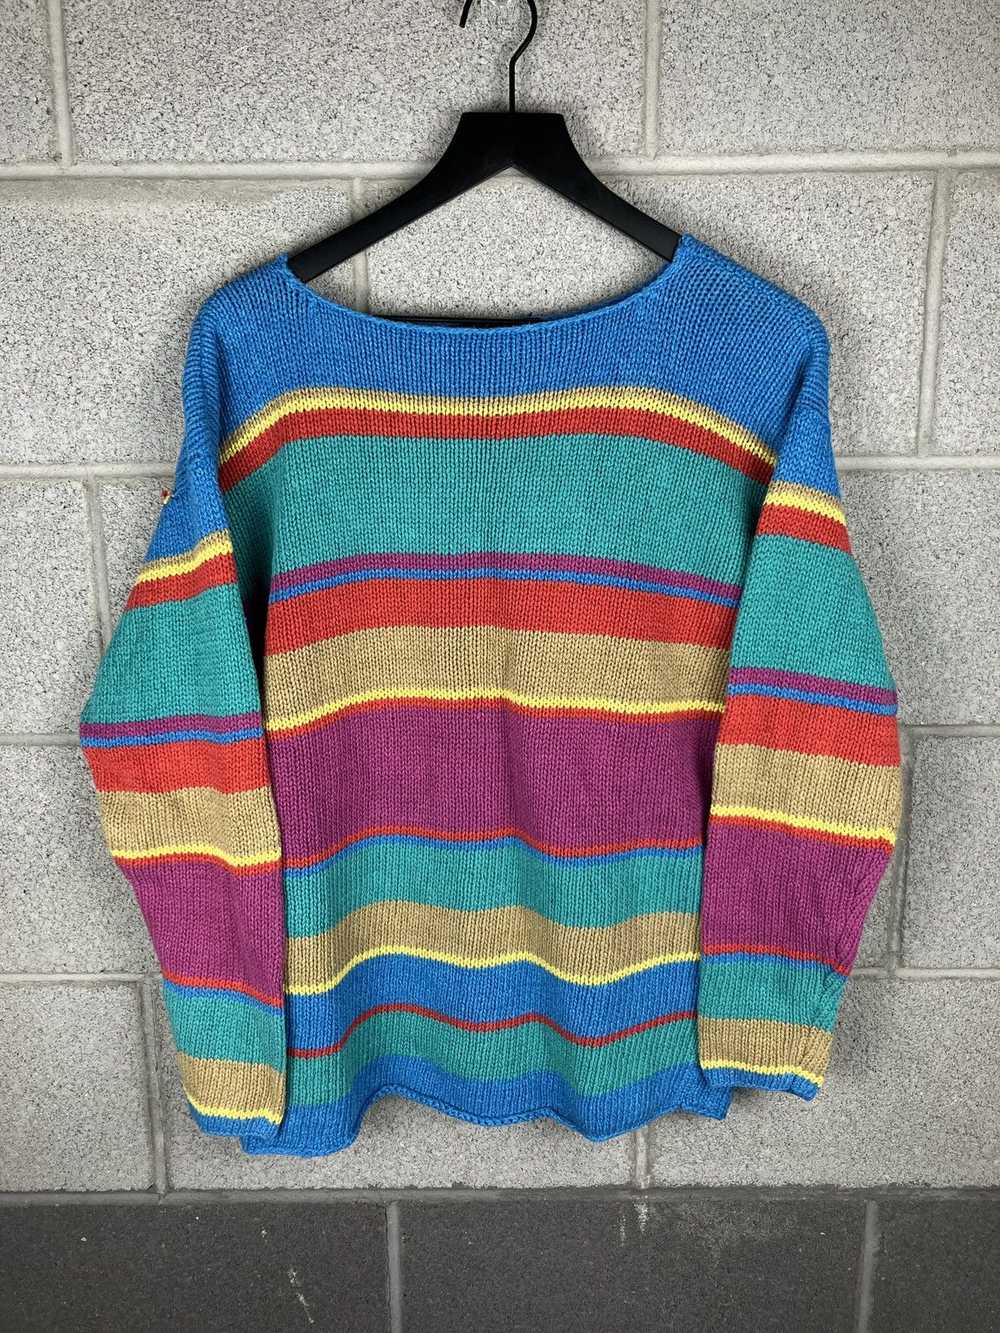 Coloured Cable Knit Sweater × Ralph Lauren × Vint… - image 1